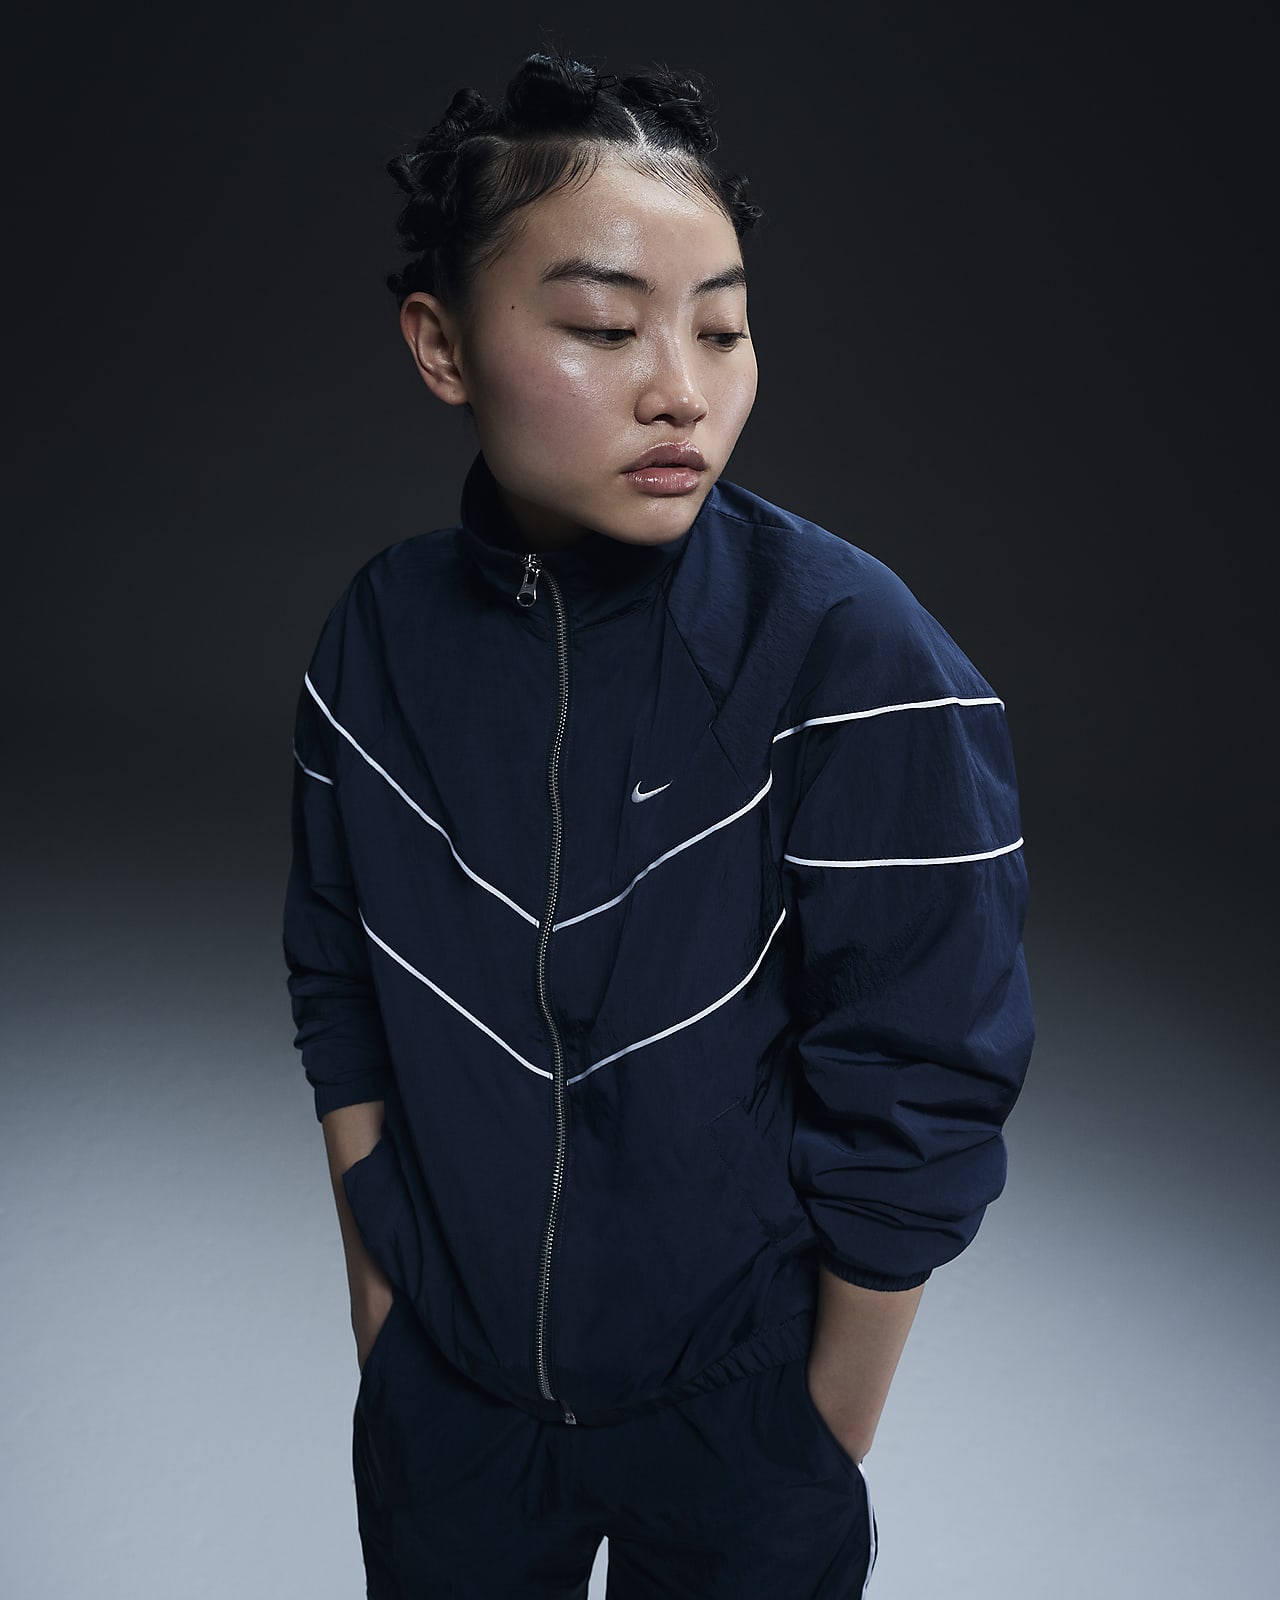 Nike Windrunner Women's Loose UV Woven Full-Zip Jacket